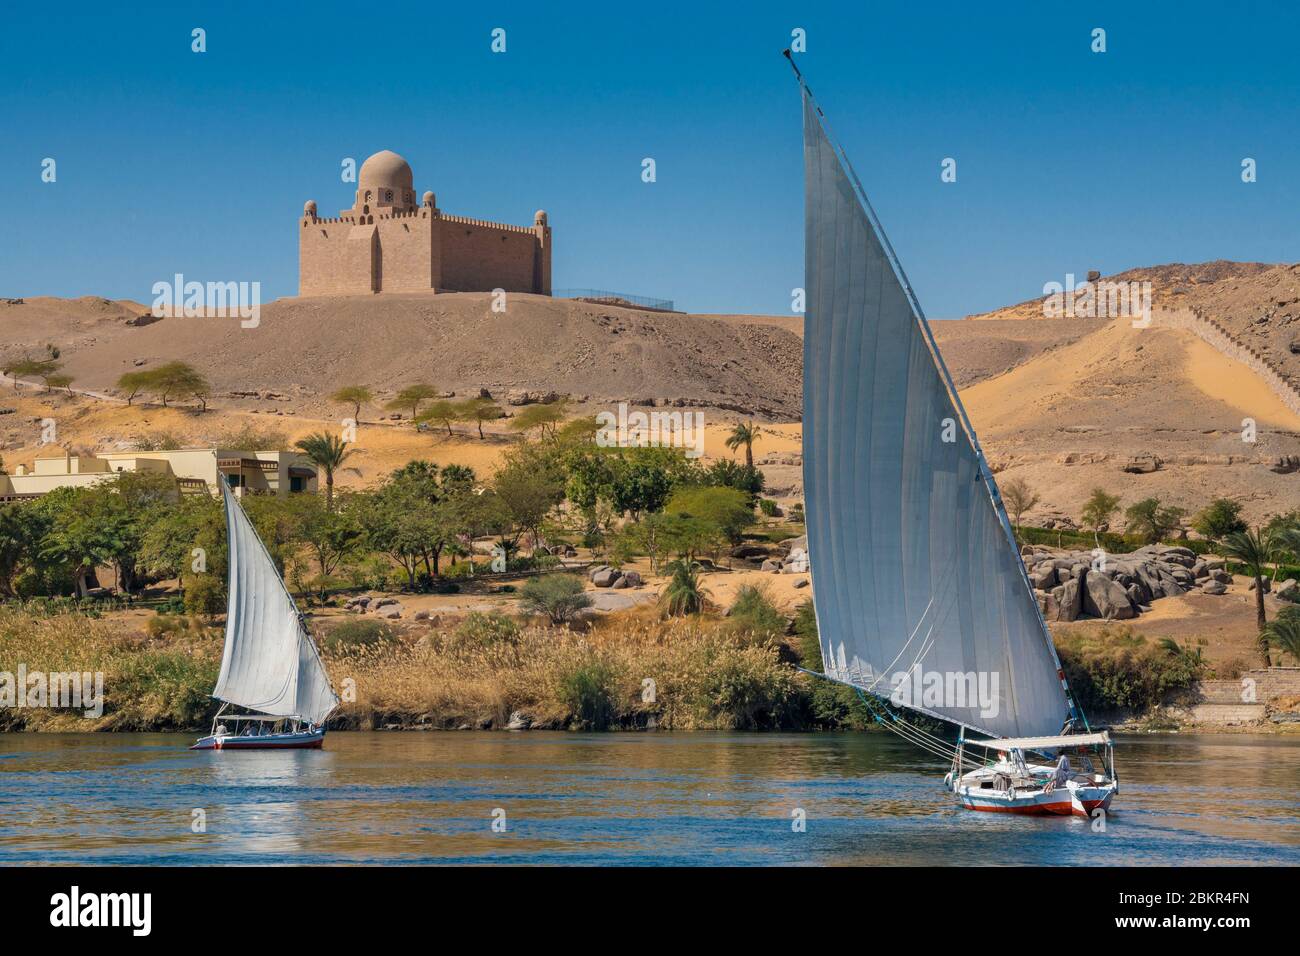 Égypte, haute Égypte, près de l'île Elephanine, feloucca naviguant sur le Nil près du mausolée d'Aga Khan Banque D'Images